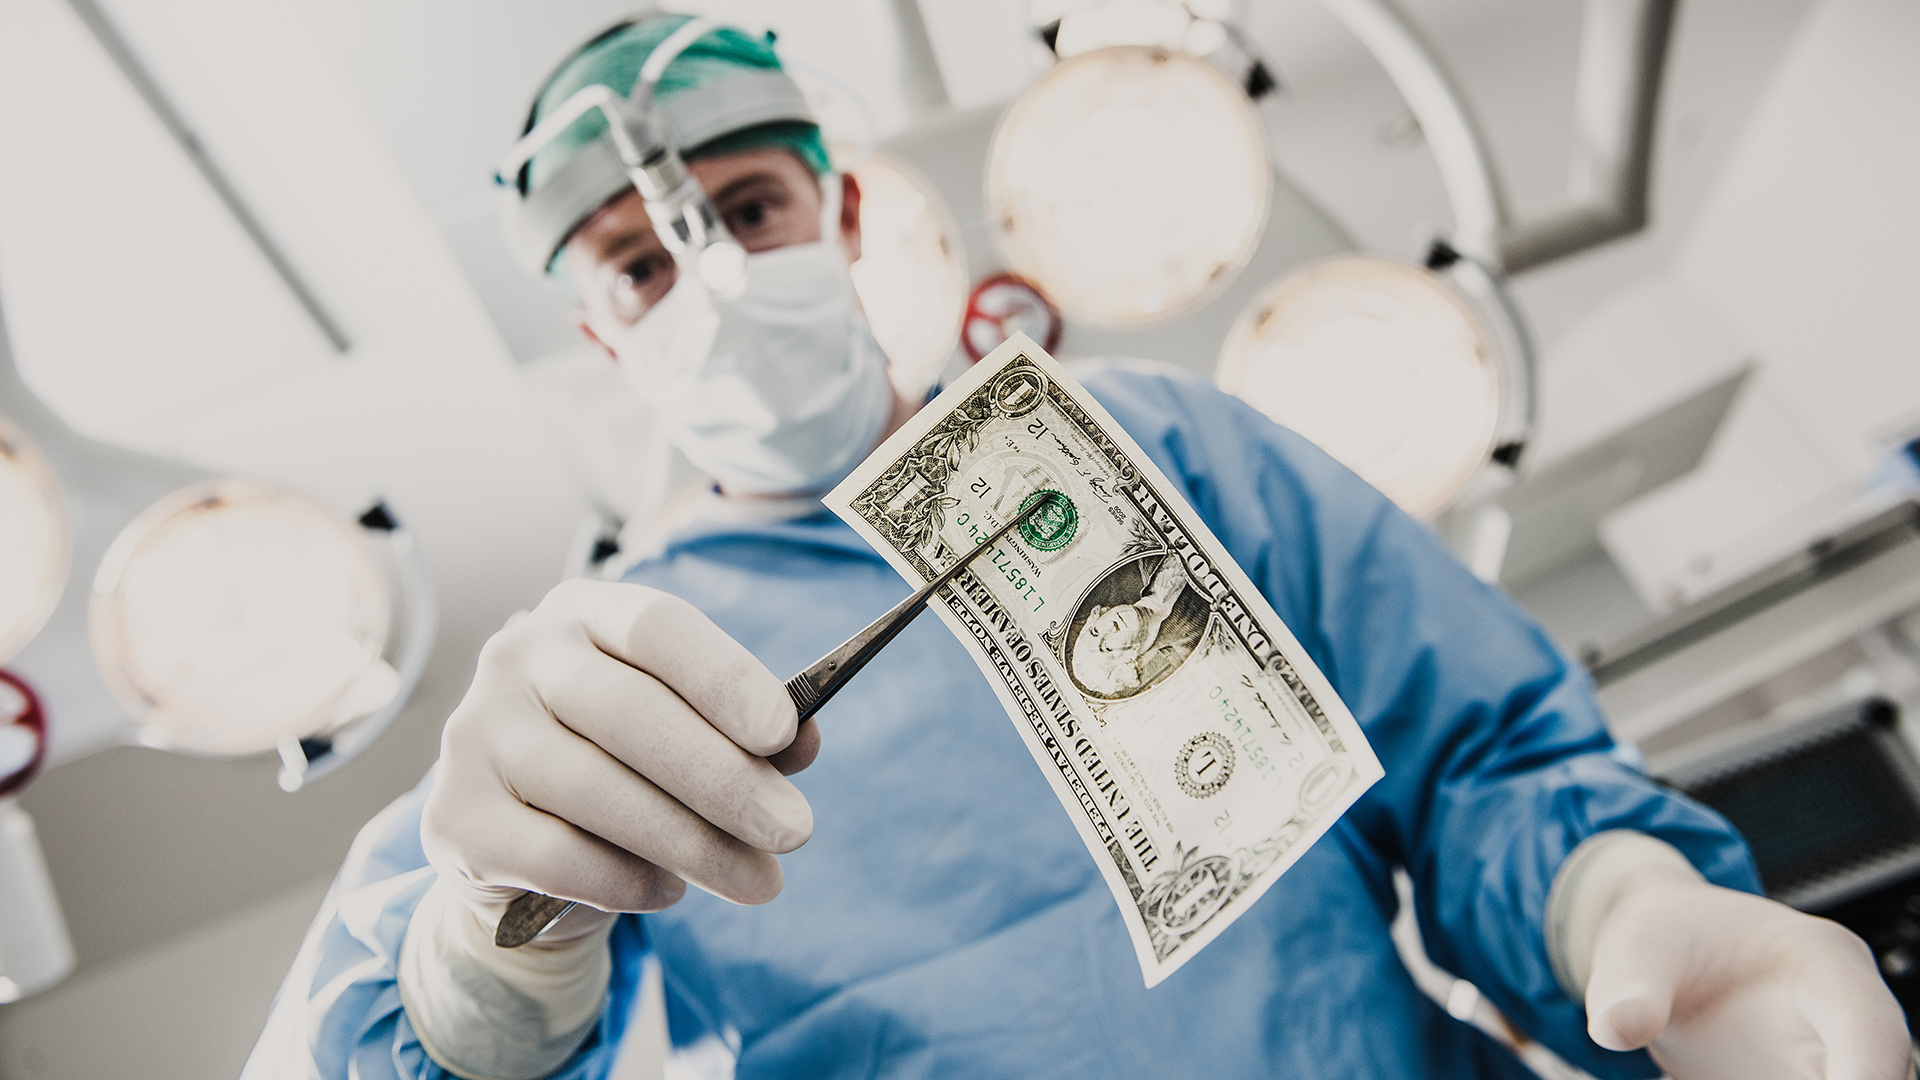 Felfüggesztett börtönt kapott a betegeitől pénzt kérő orvos